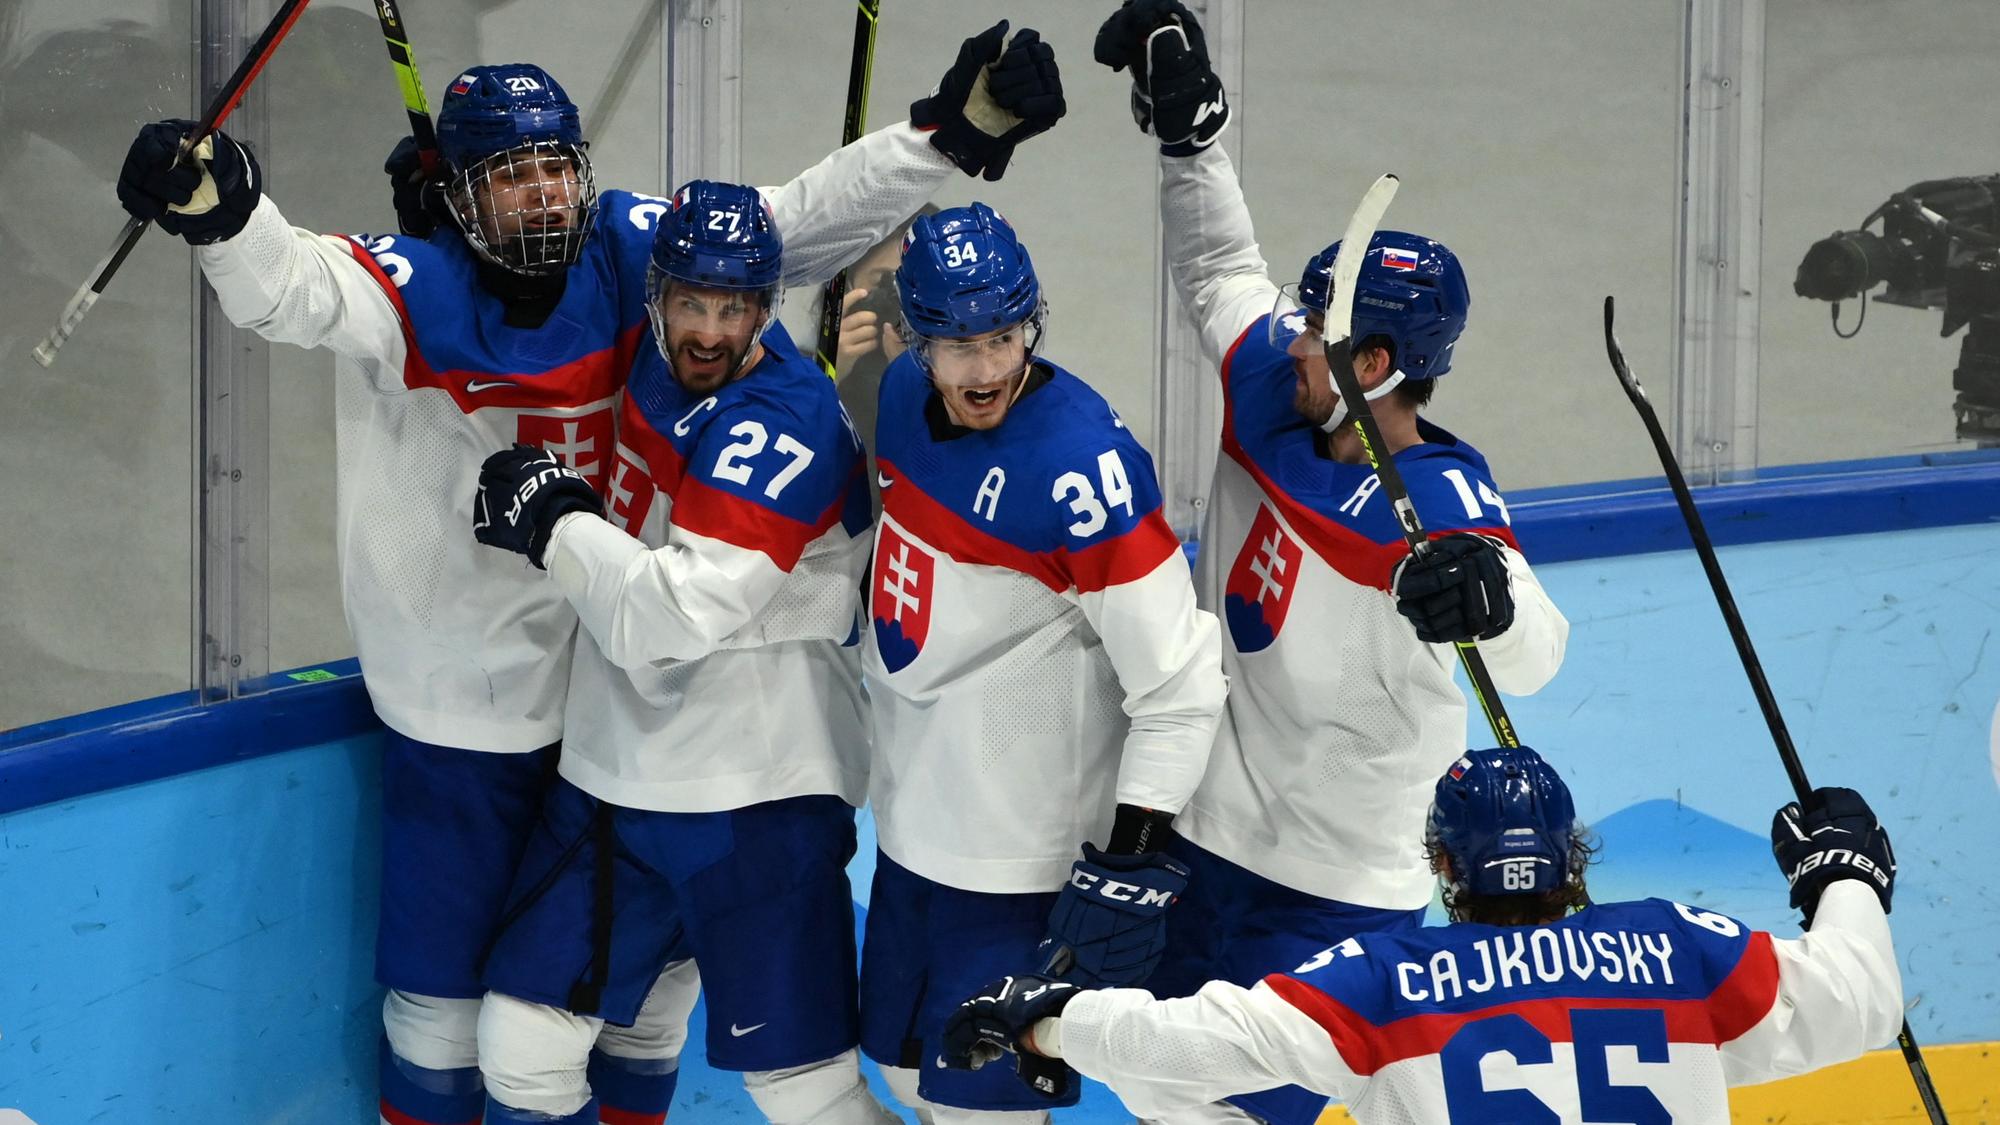 ZOH 2022 hokej - Slovensko - USA 3:2 pp a sn (hokej) - olympiáda dnes |  Šport.sk